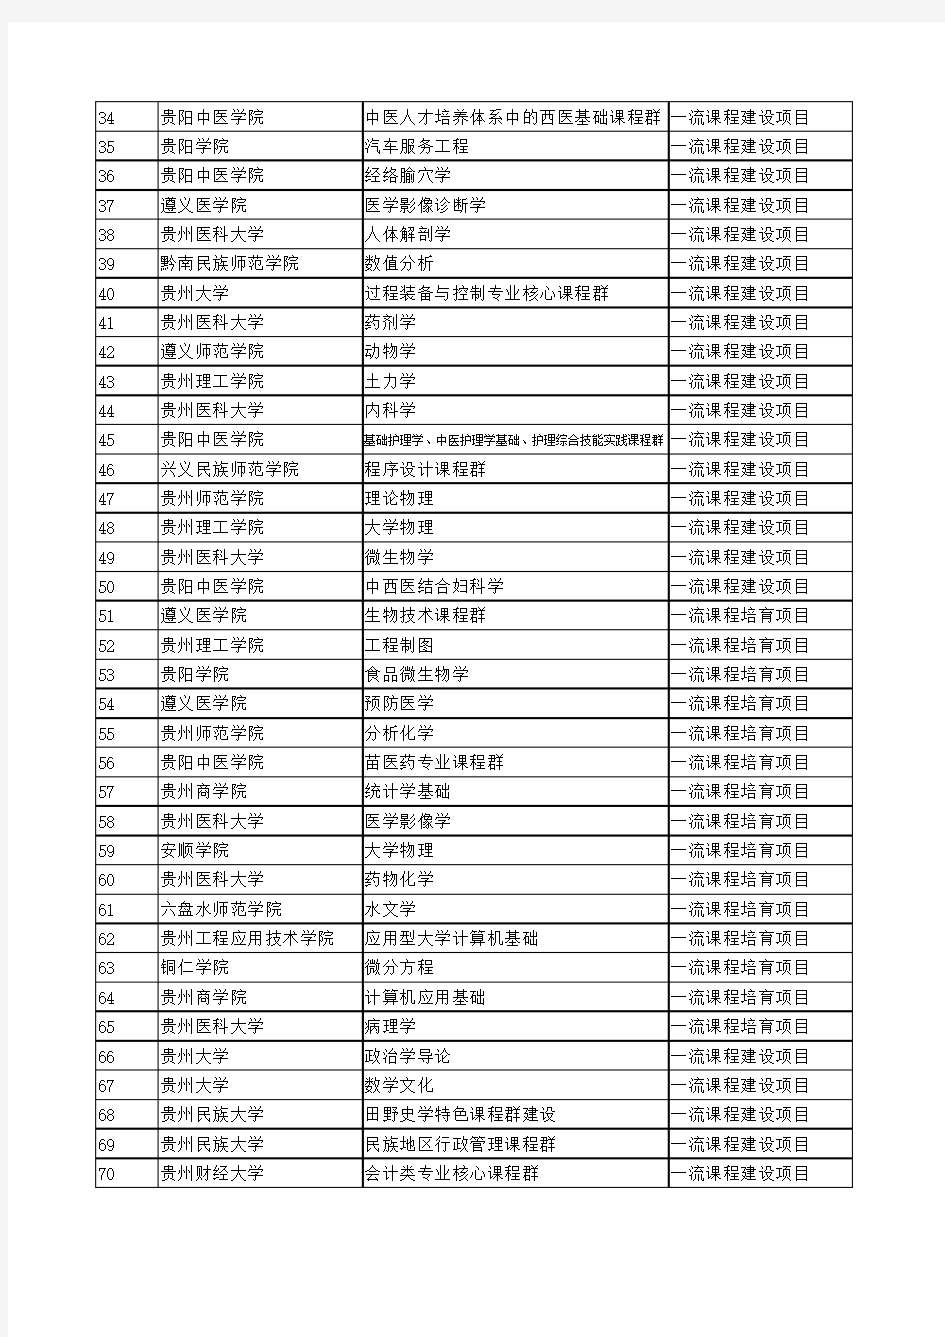 贵州省2017年一流大学--一流课程建设(培育)项目拟立项名单